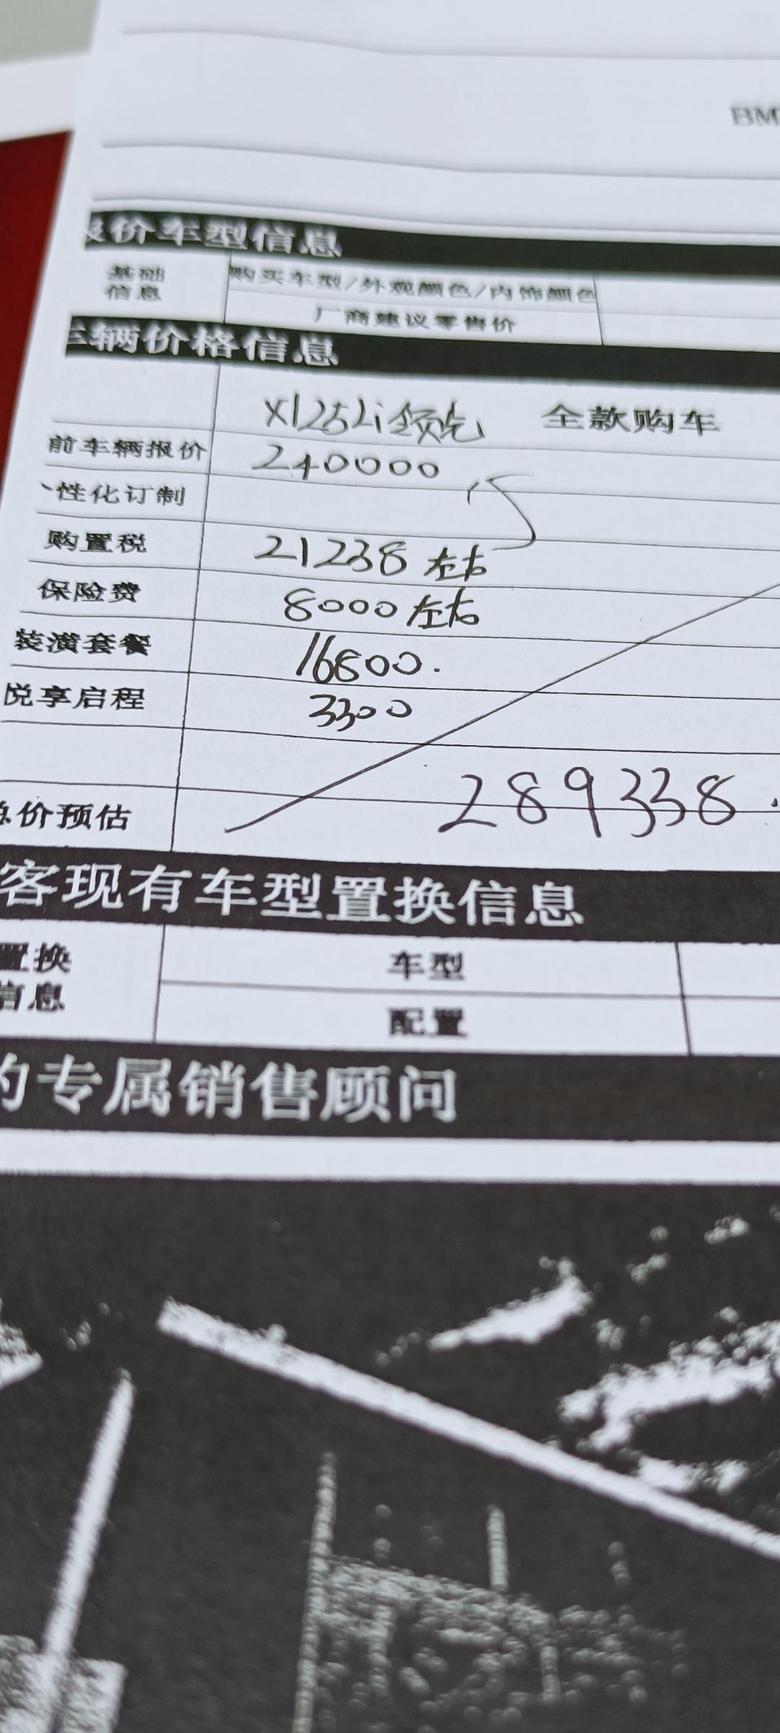 宝马x1 坐标南京，南京的朋友这二天买的多少啊？